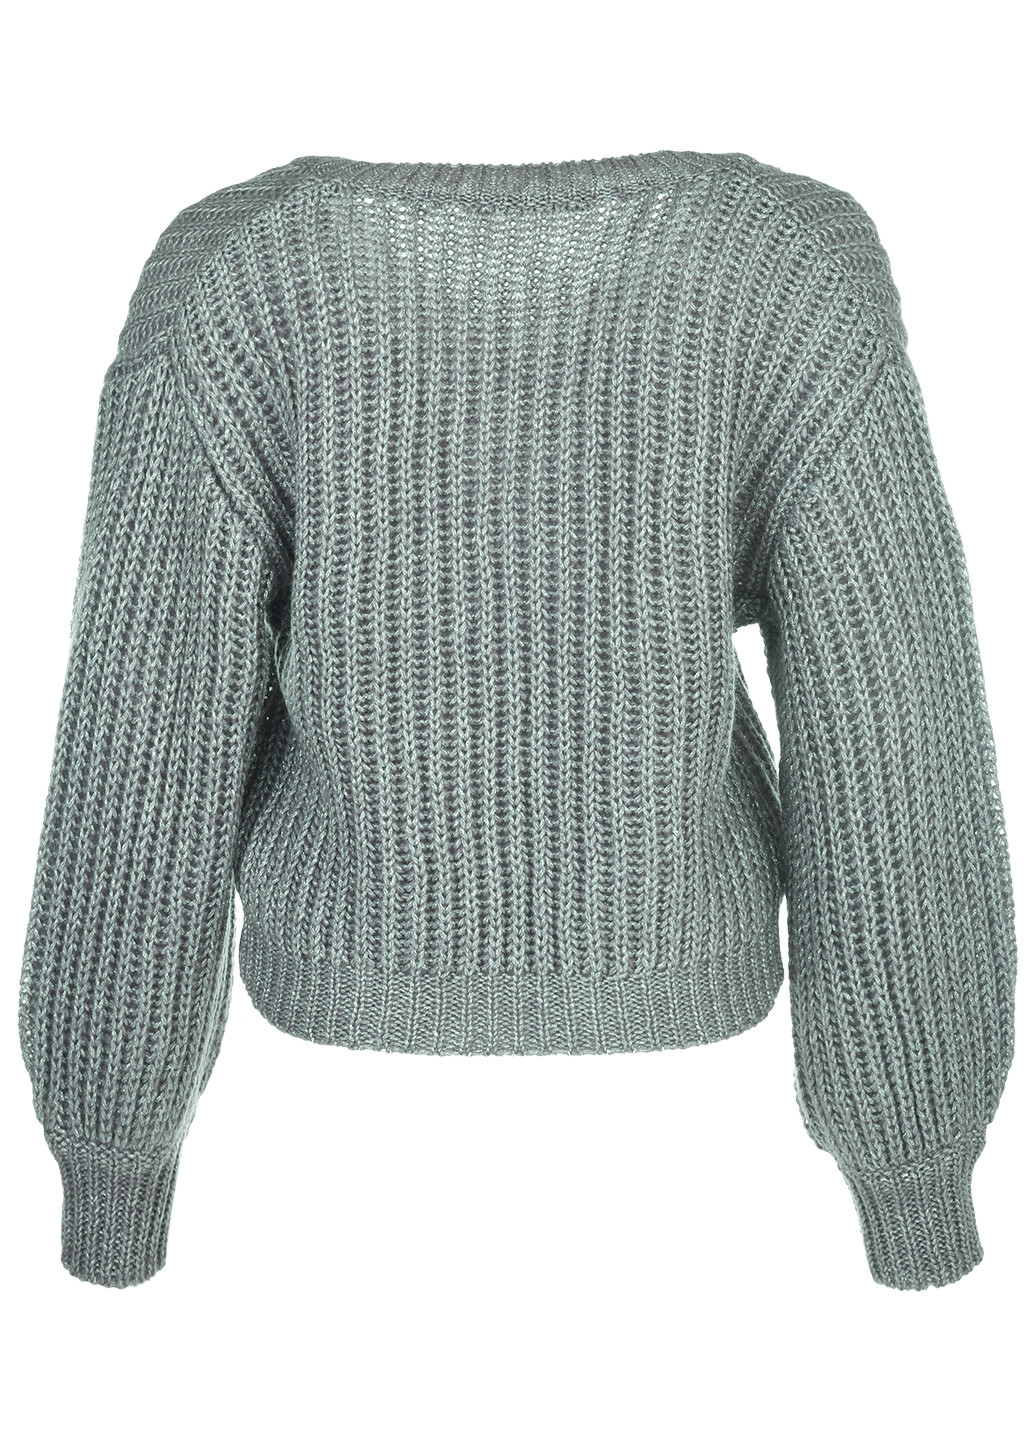 Мятный зимний джемпер пуловер LOVE REPUBLIC